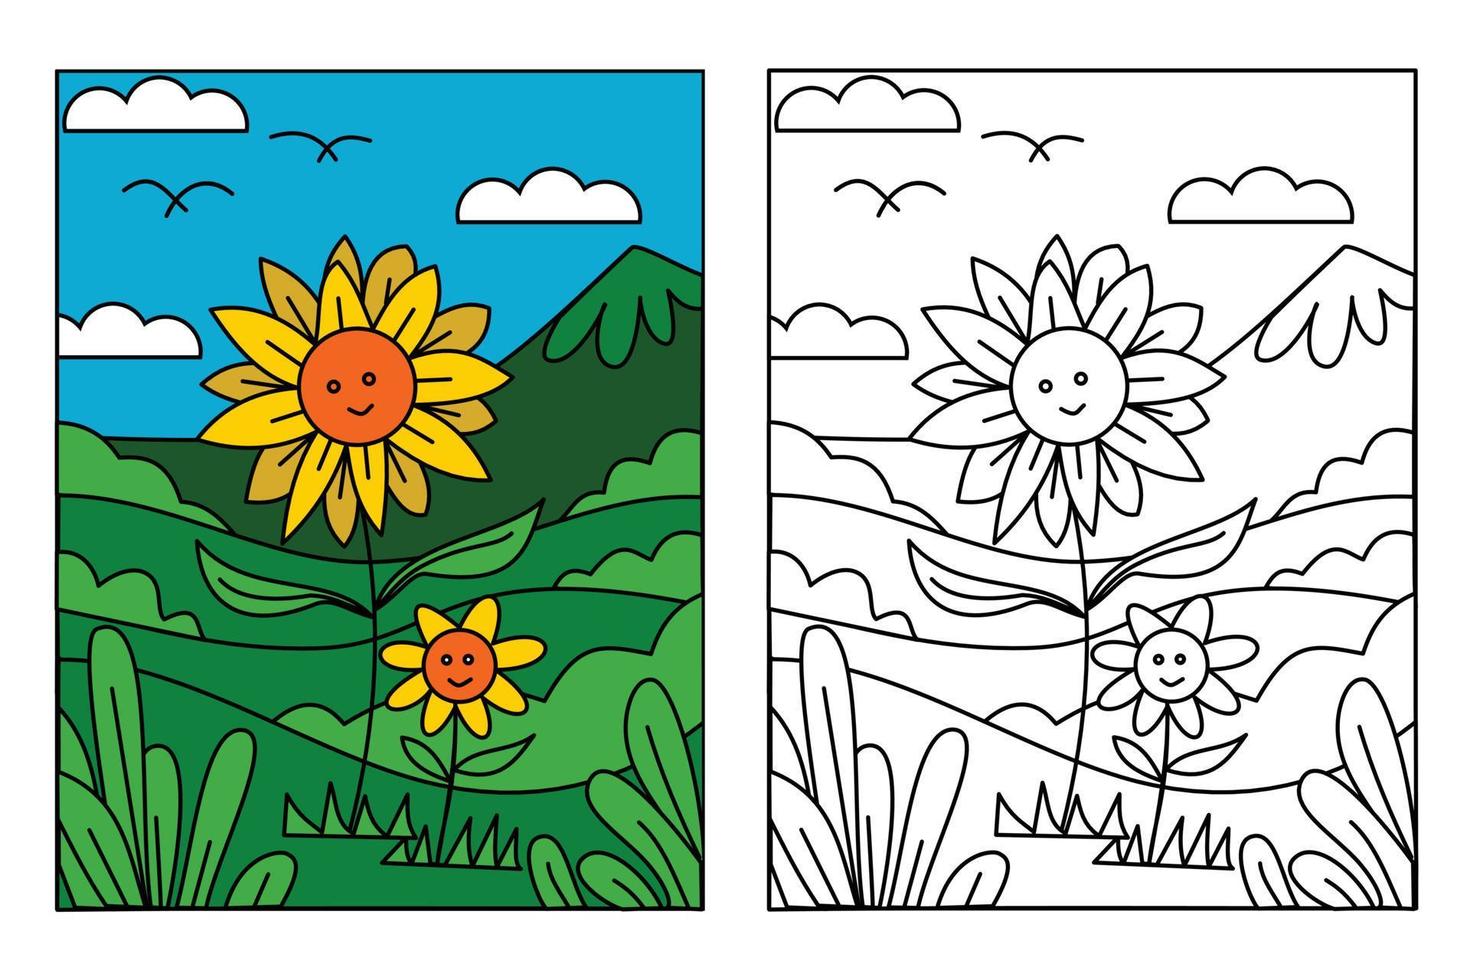 süße Sonnenblume in schöner Landschaft zum Ausmalen für Kinder, die Bildung zeichnen. einfache karikaturillustration im fantasiethema für malbuch vektor